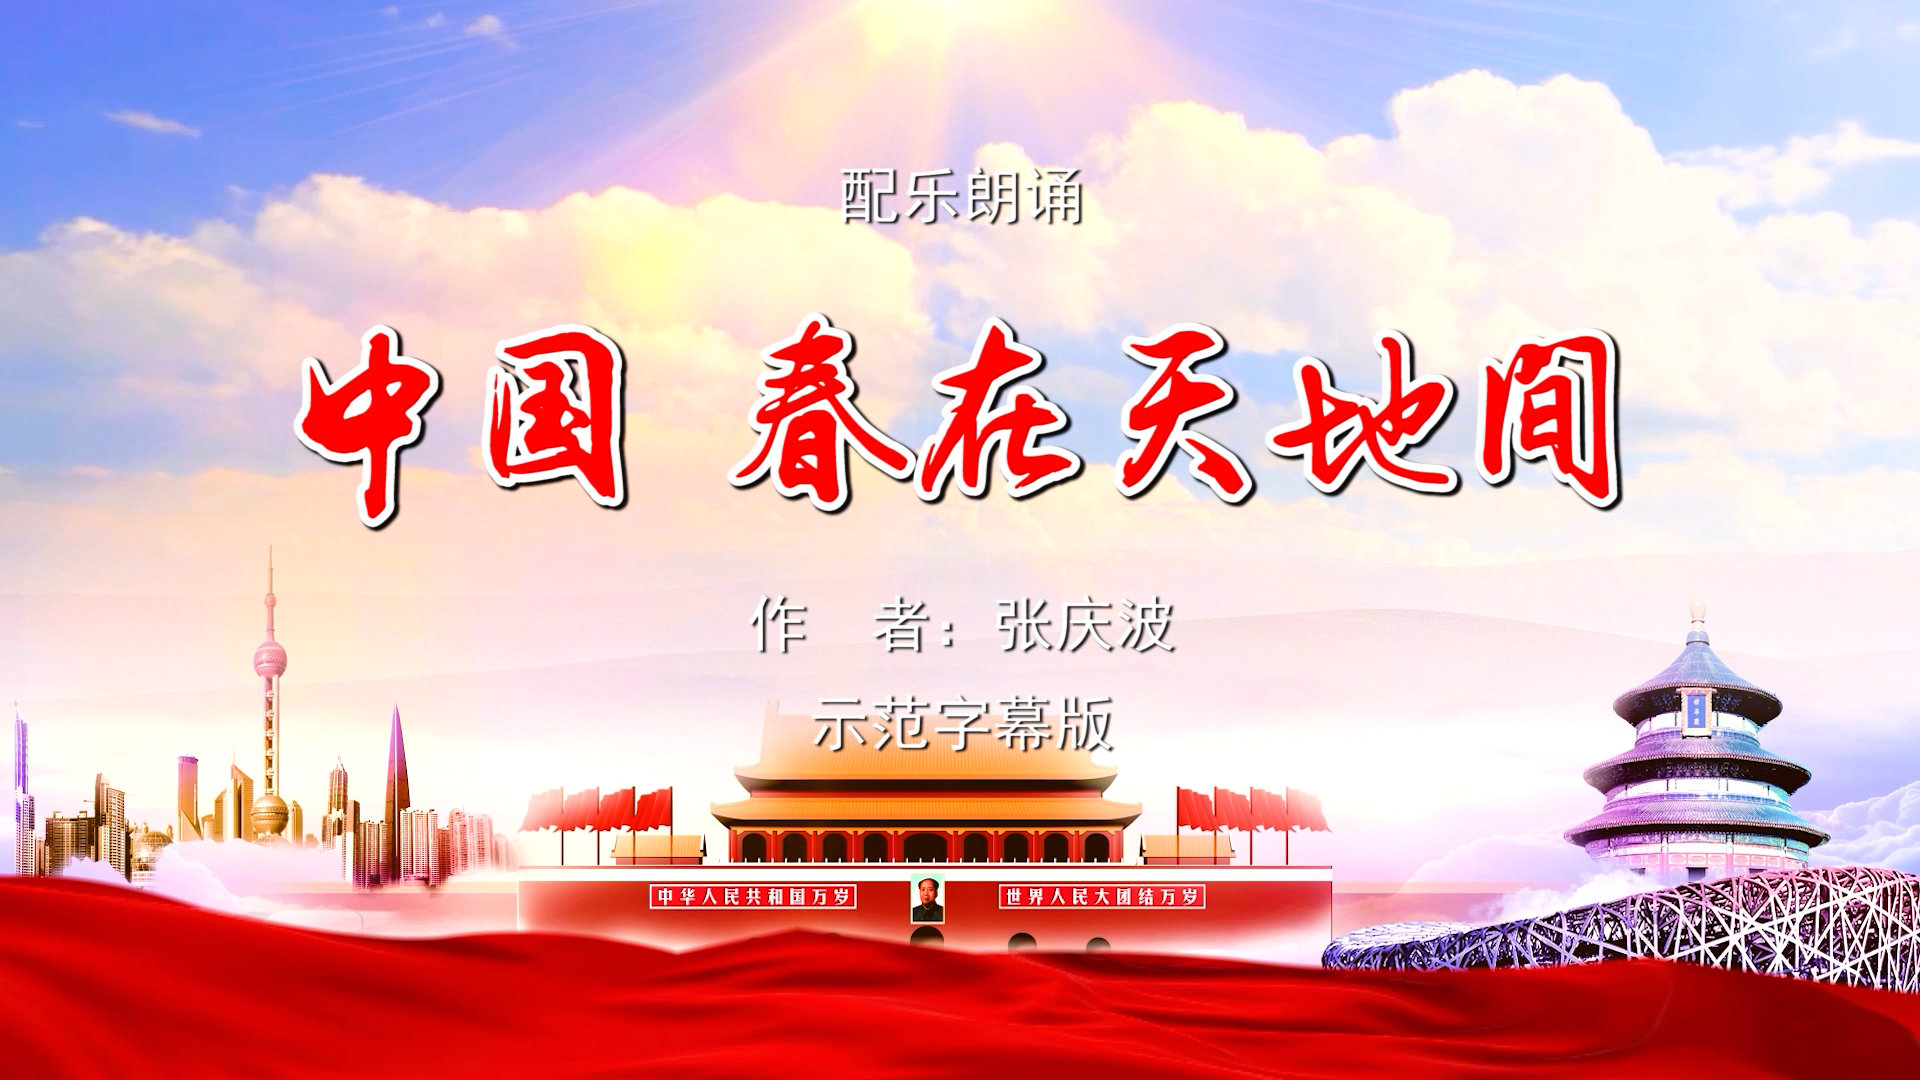 中国春在天地间 歌颂祖国春天主题 多人集体诗歌朗诵配乐伴奏舞台演出LED背景视频素材TV